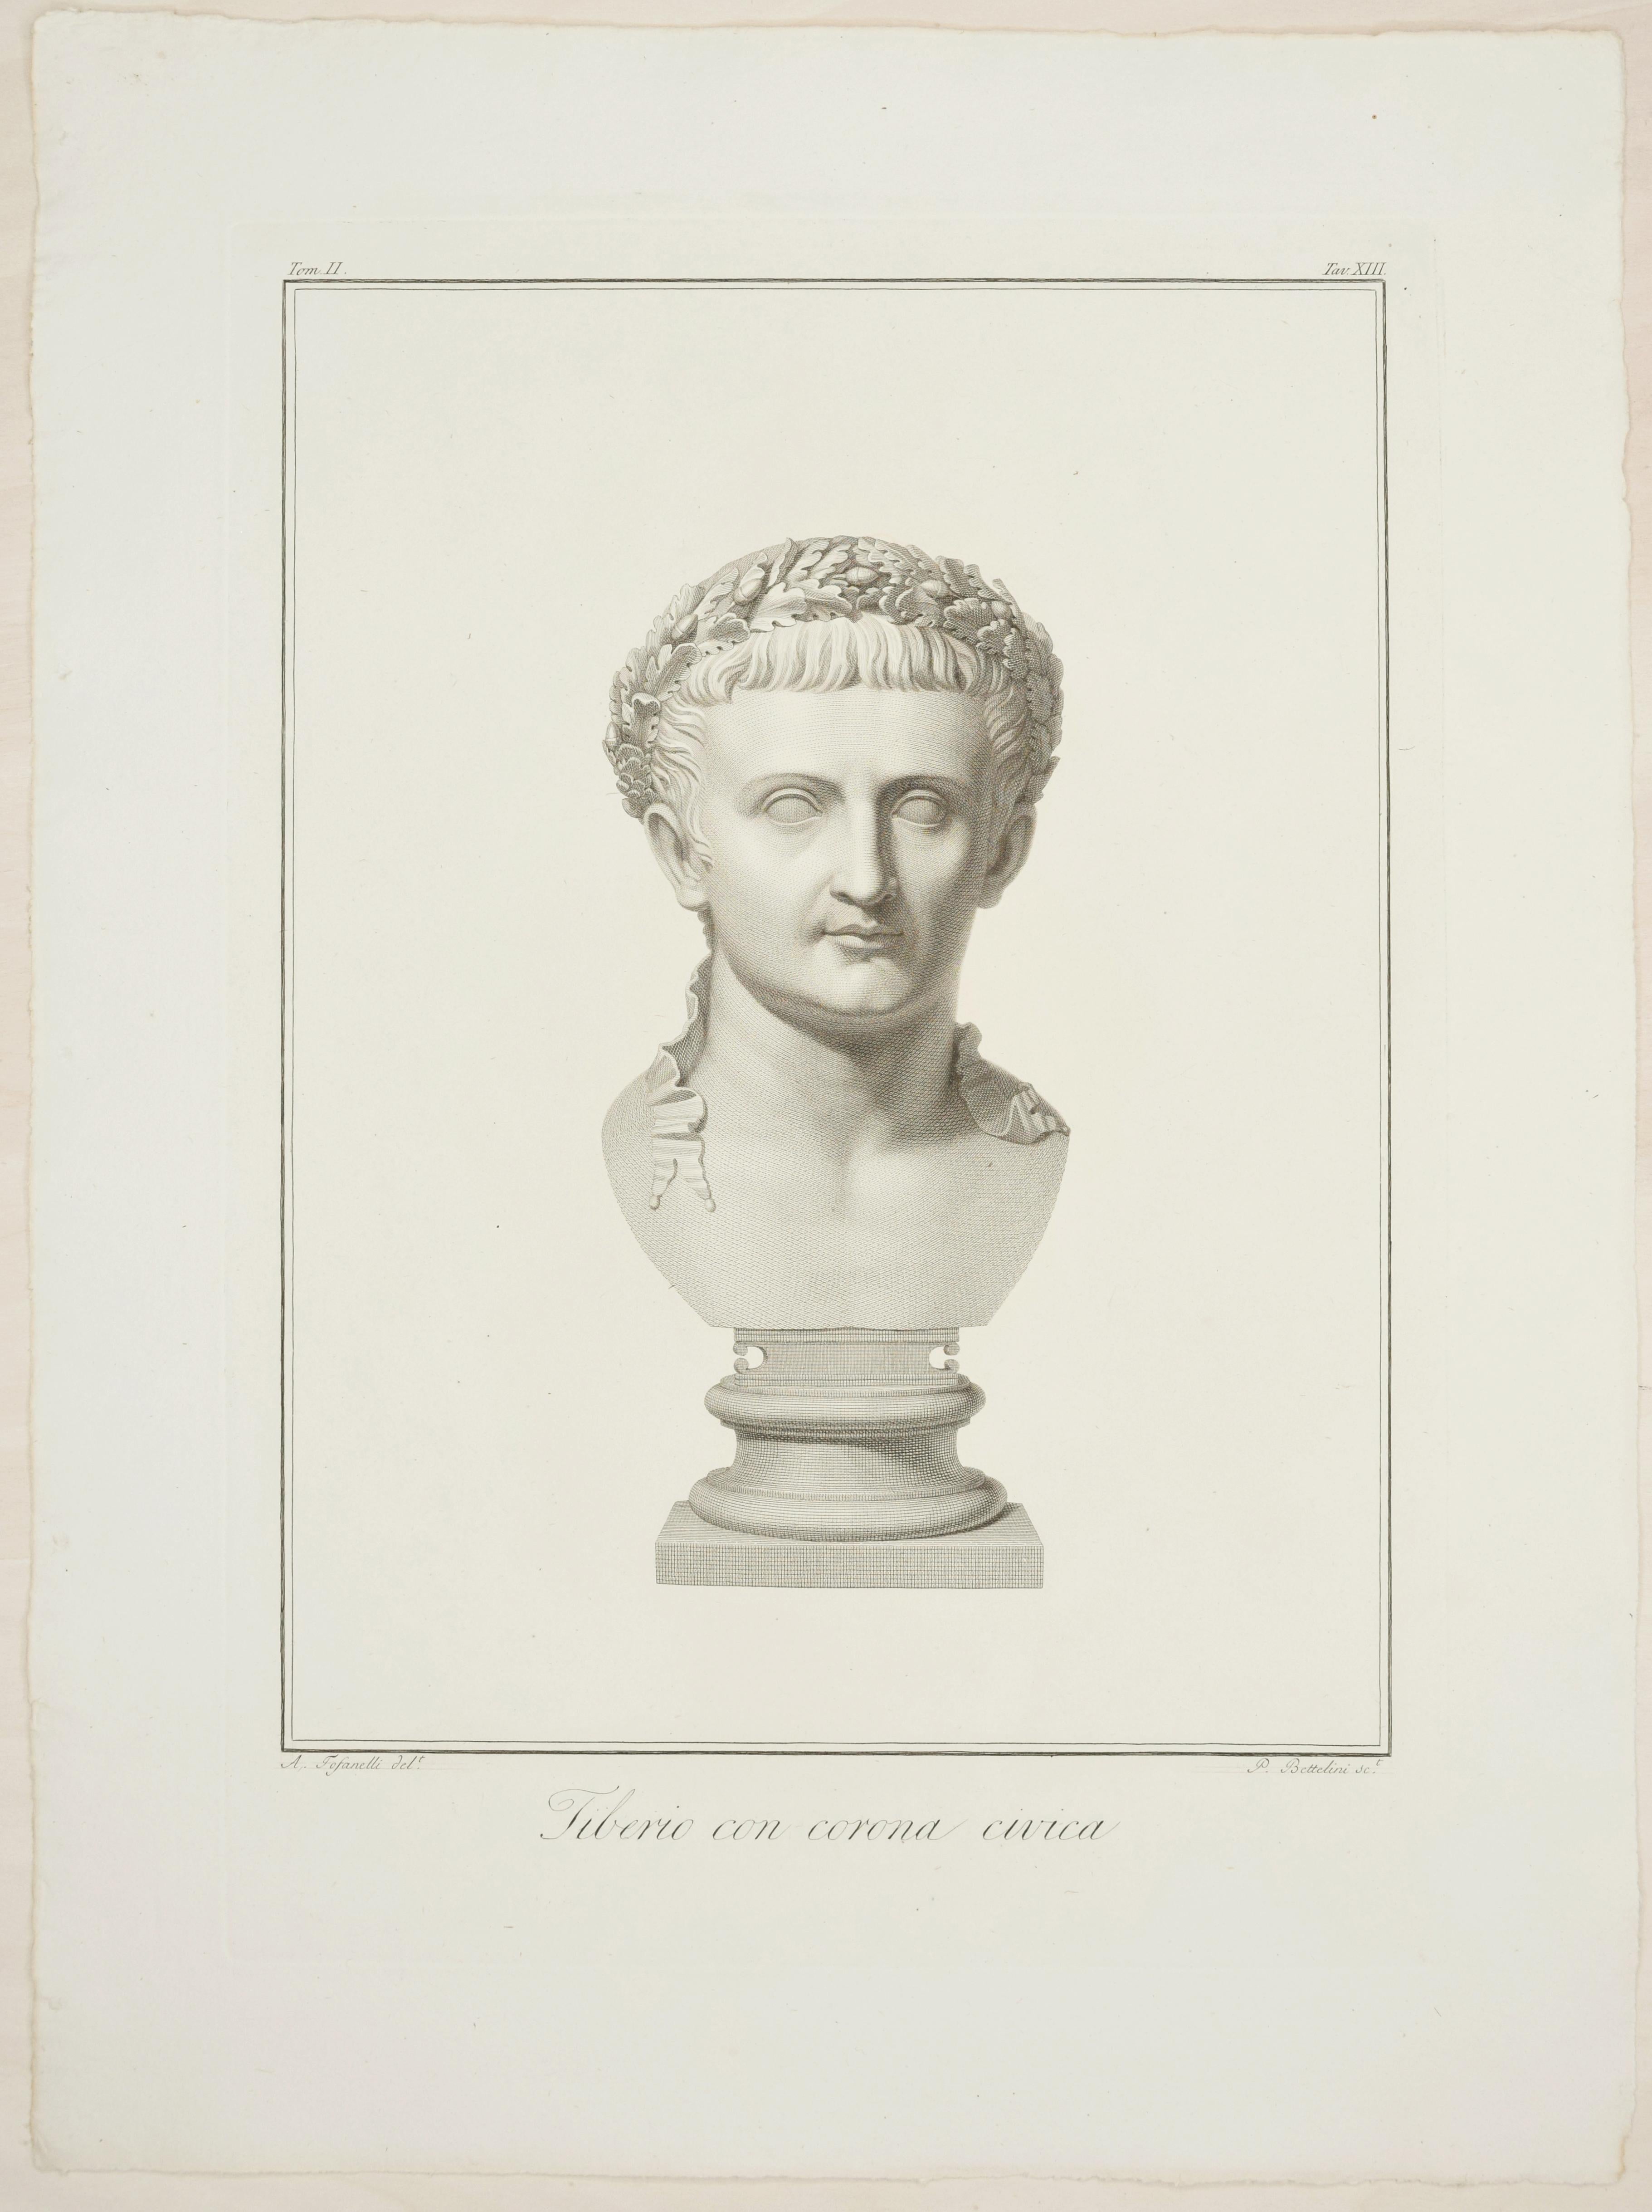 Portrait Print Pietro Fontana - Buste de Tiberius - Gravure originale de P. Fontana d'après A. Tofanelli